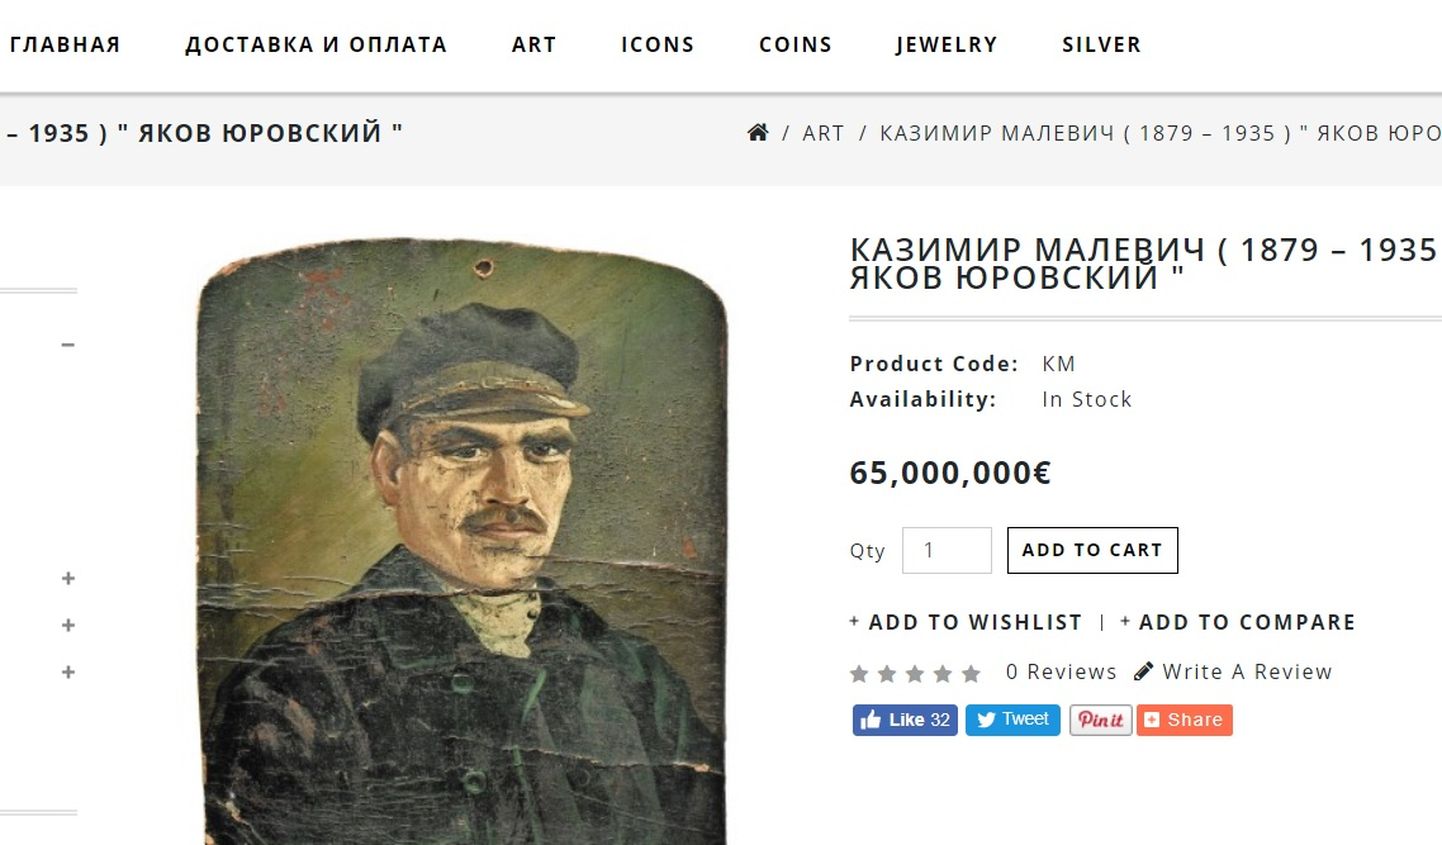 Картина, якобы принадлежащая кисти Казимира Малевича, выставлена на продажу.